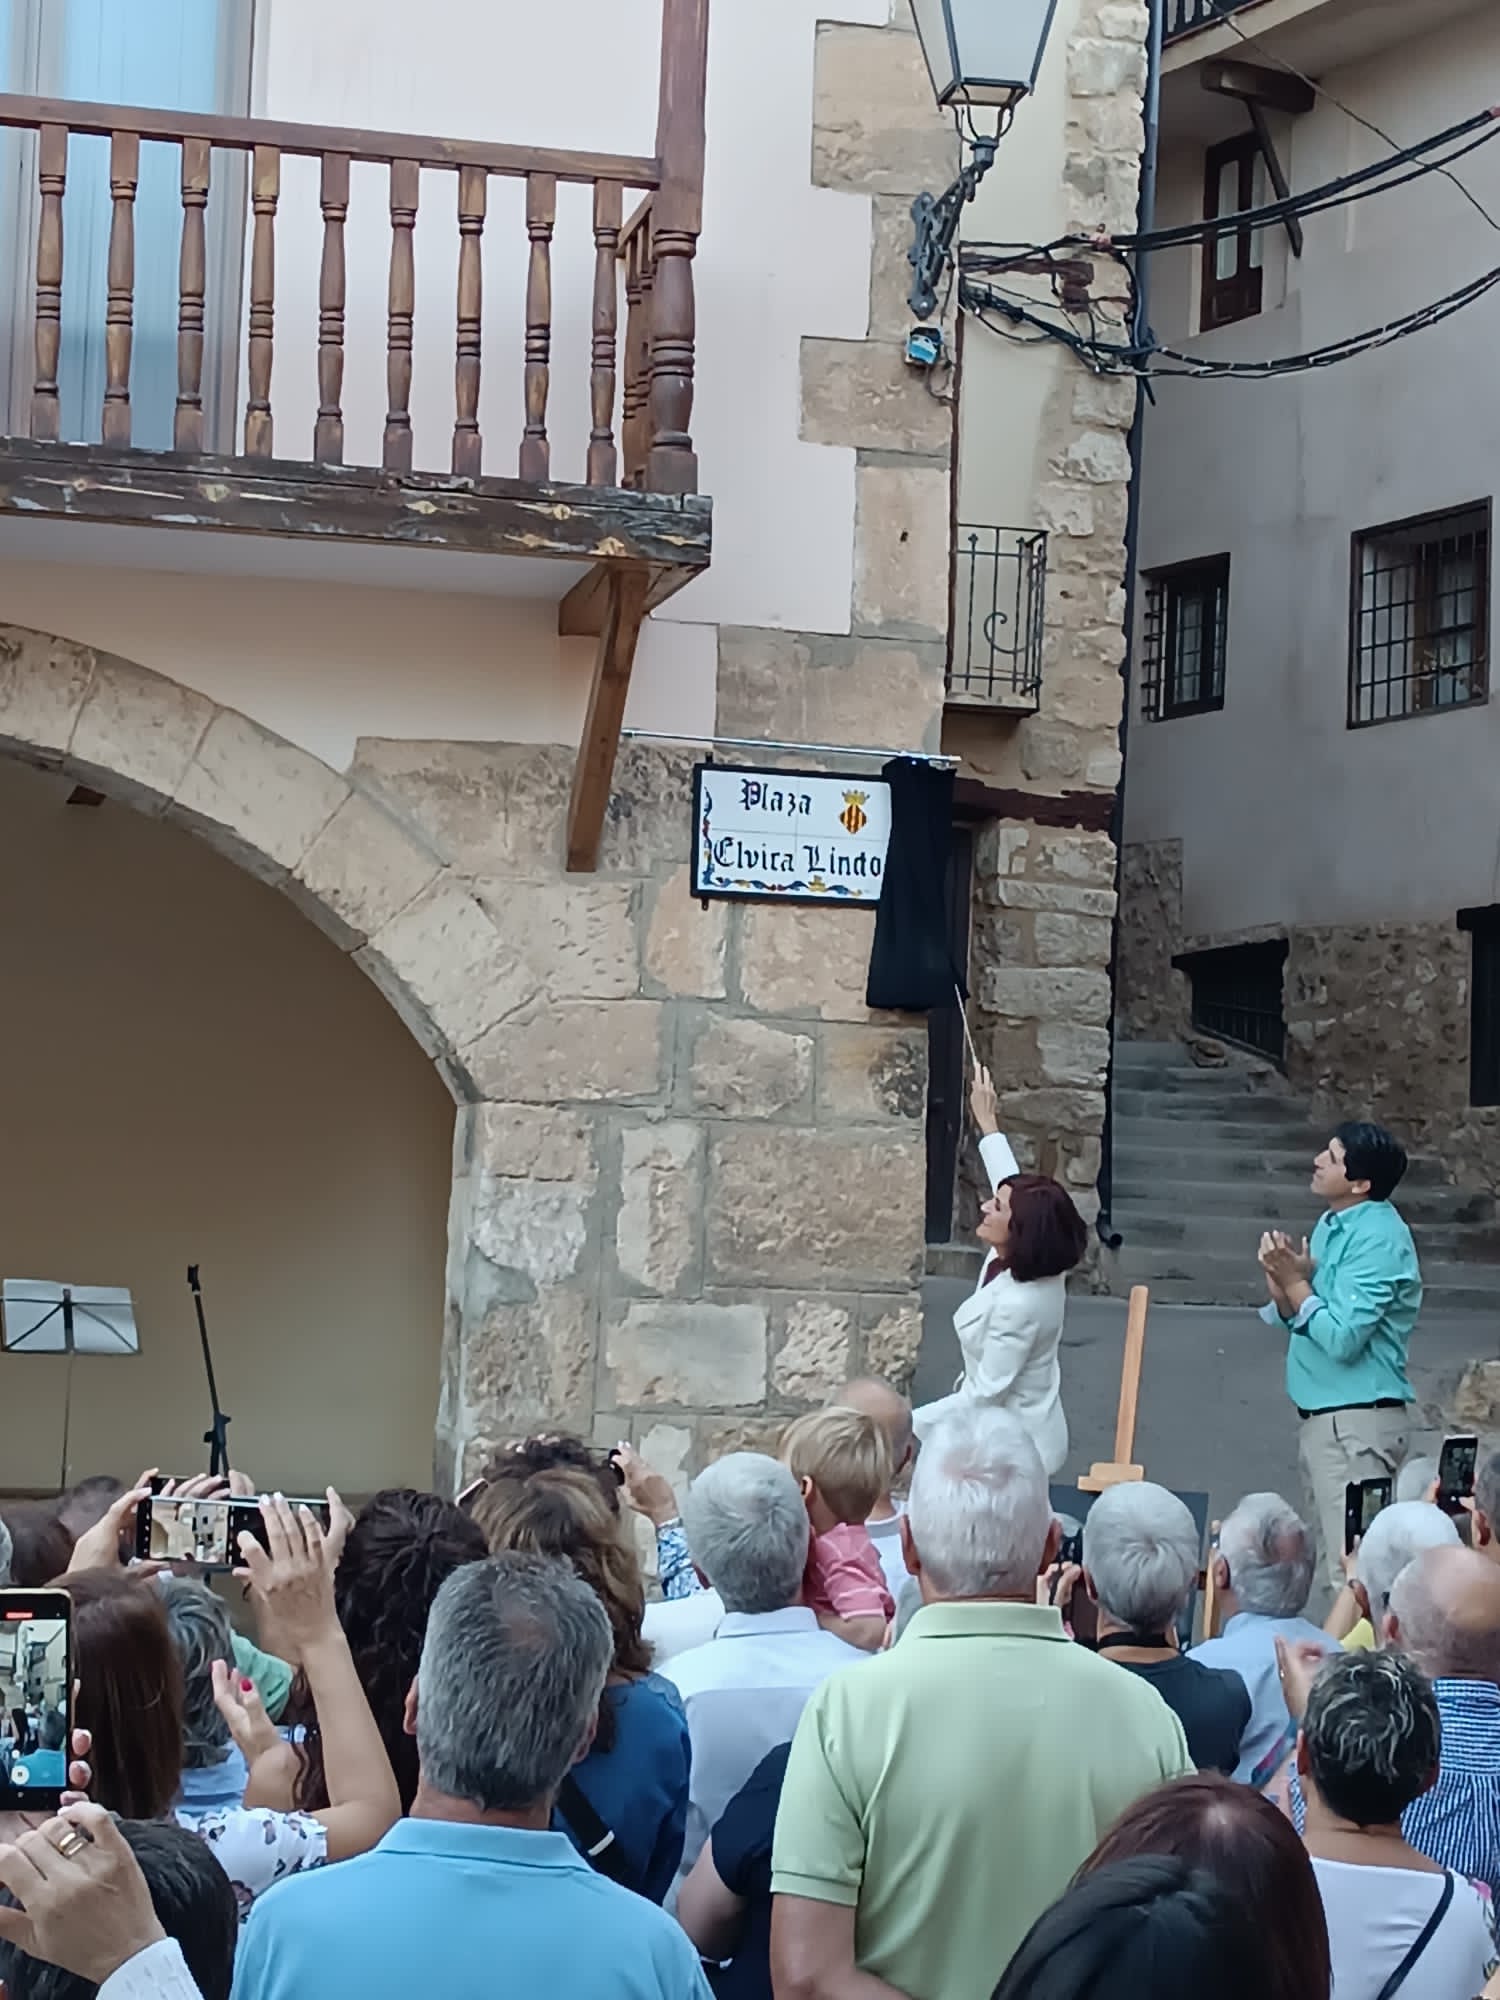 Elvira Lindo descubriendo la placa con su nombre | Fuente: Ángel Andrés